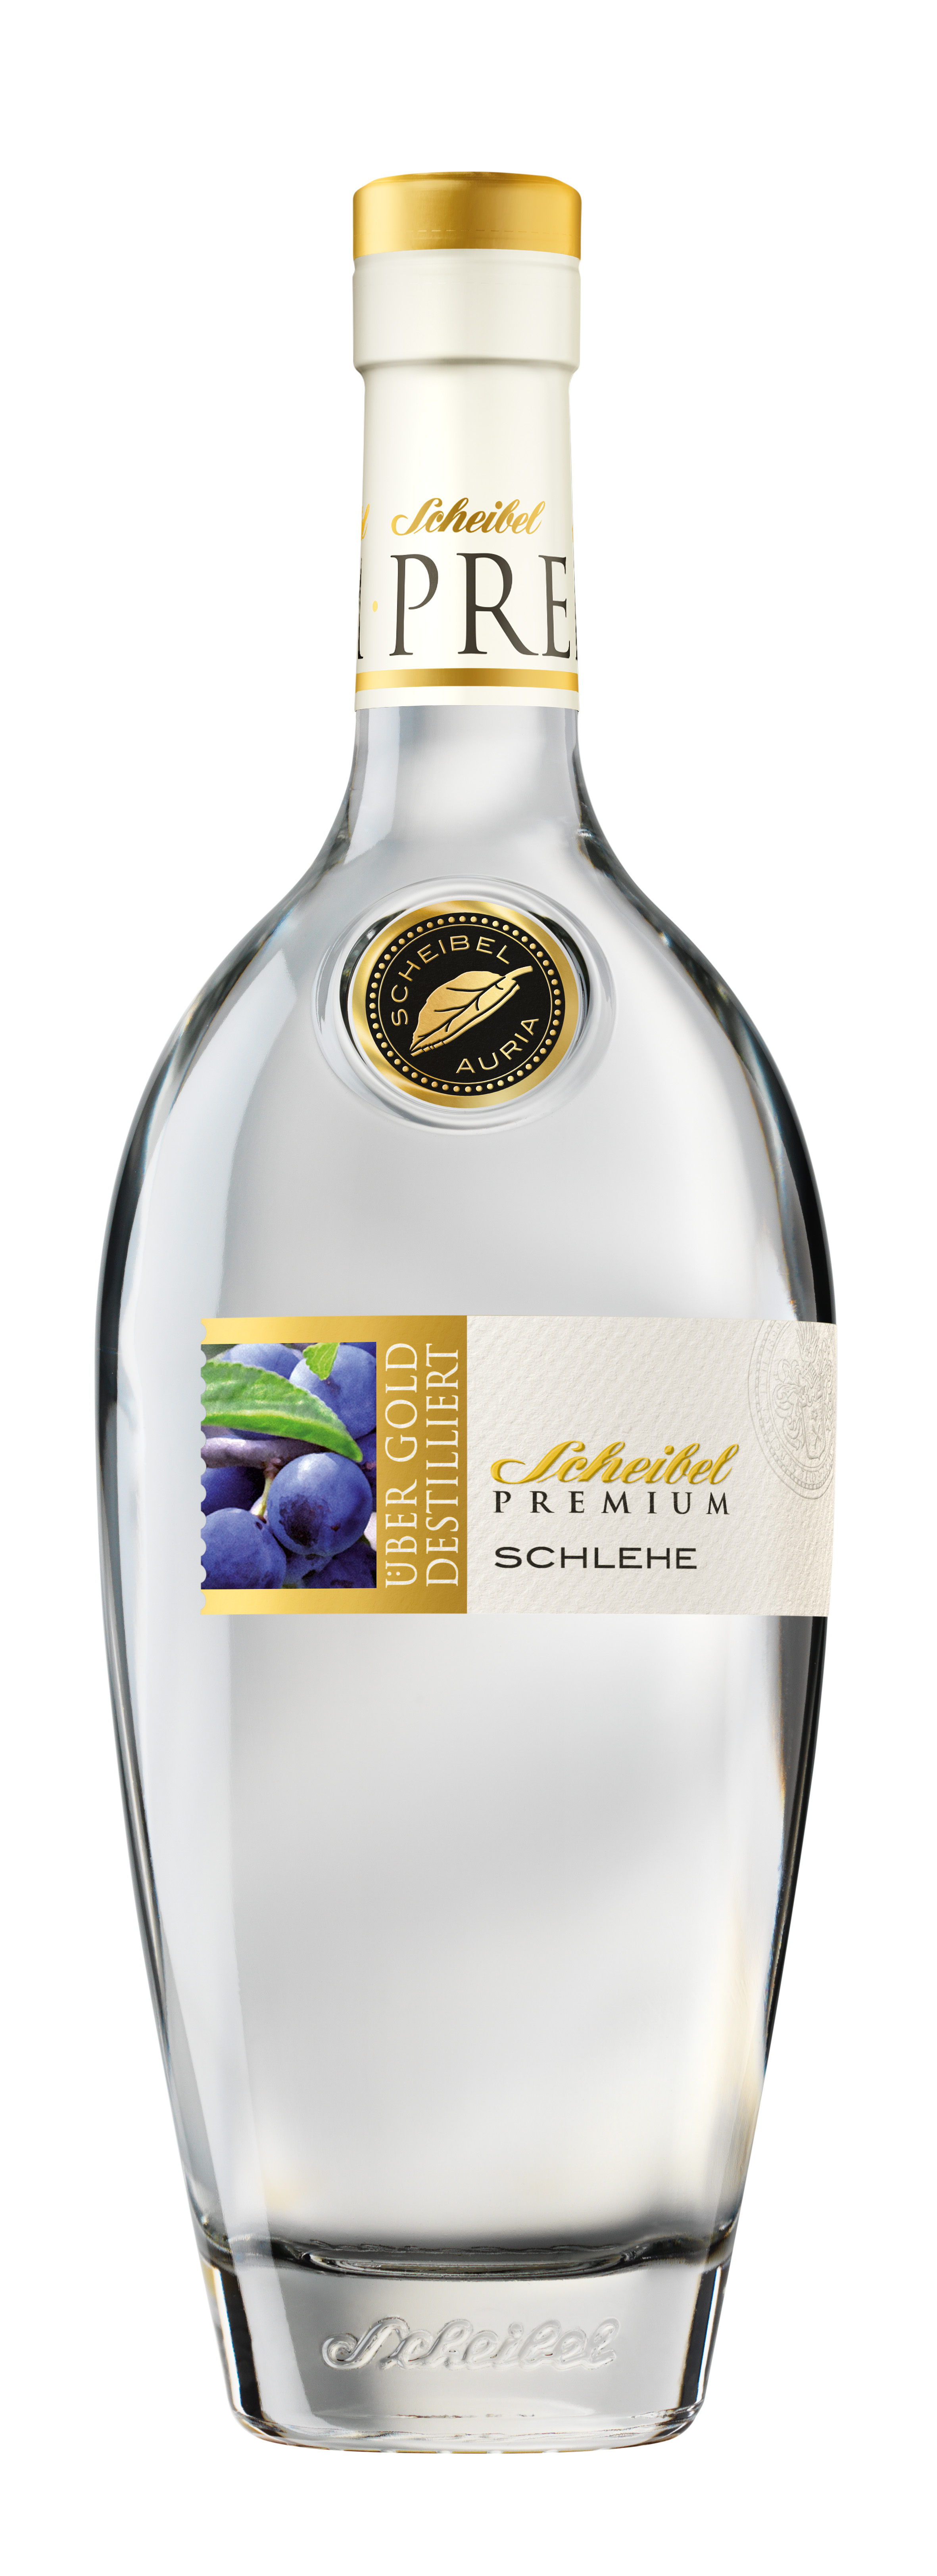 Scheibel Wild-Schlehen Geist Premium 41%vol, 0,7l